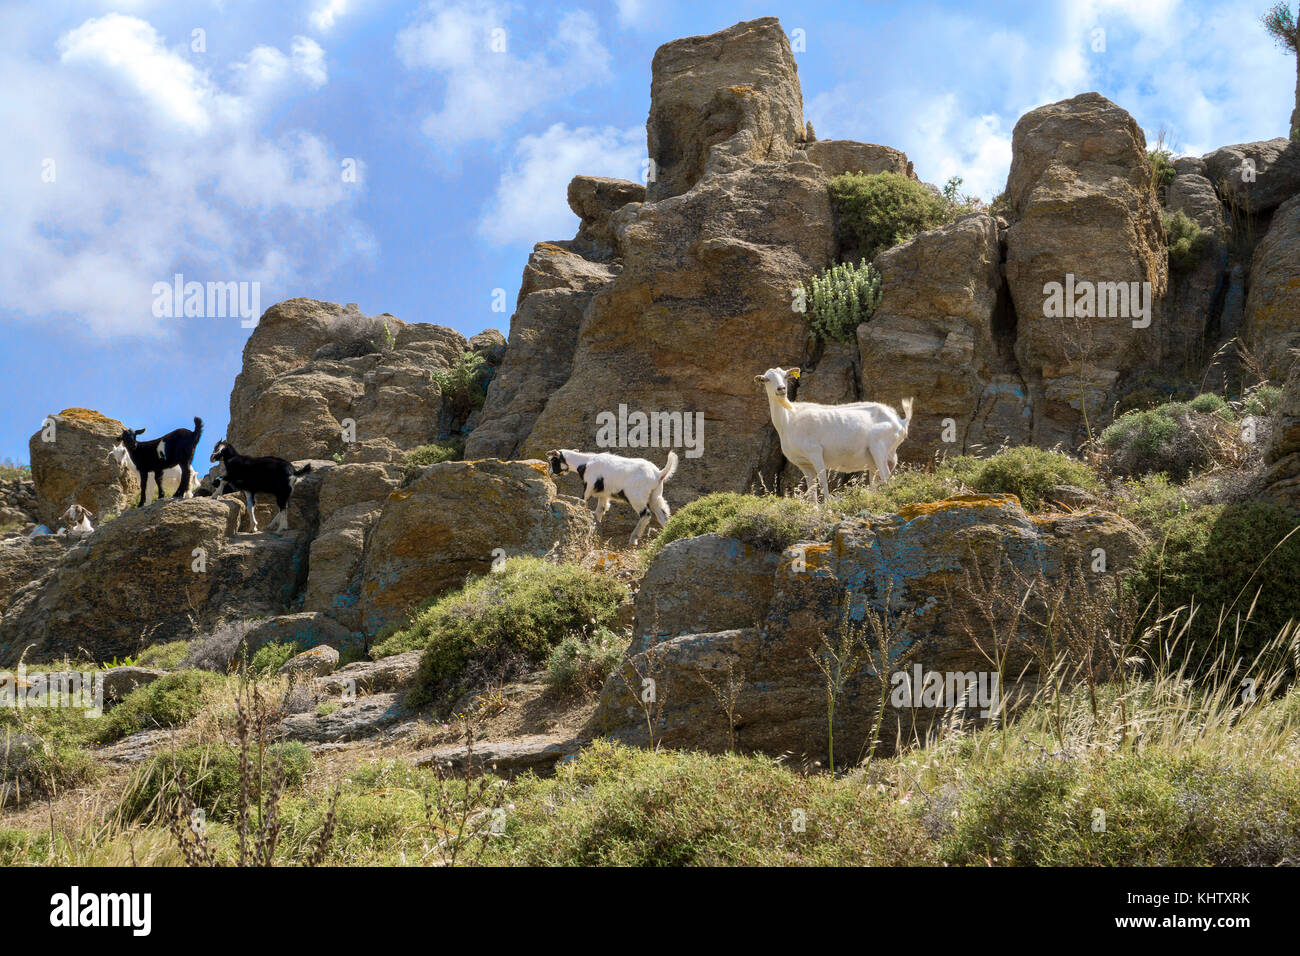 Chèvres (Capra hircus) sur des rochers, l'île de Mykonos, Cyclades, Mer Égée, Grèce Banque D'Images